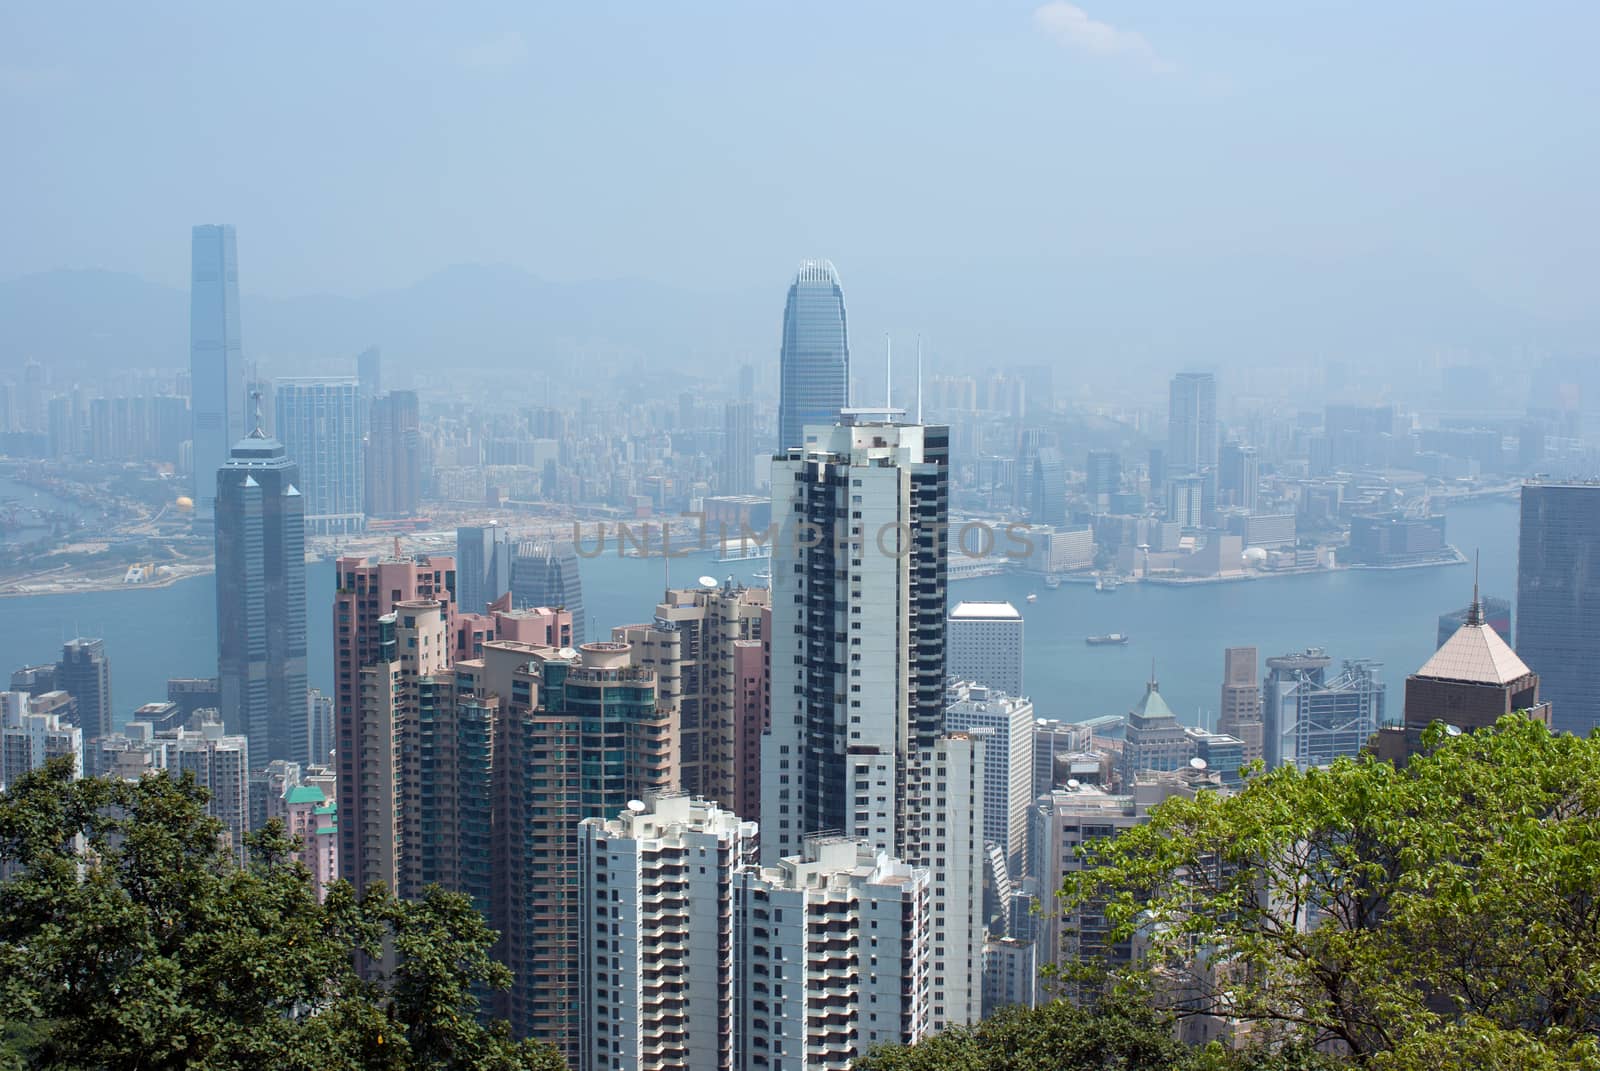 Hong Kong skyline viewed from The Peak